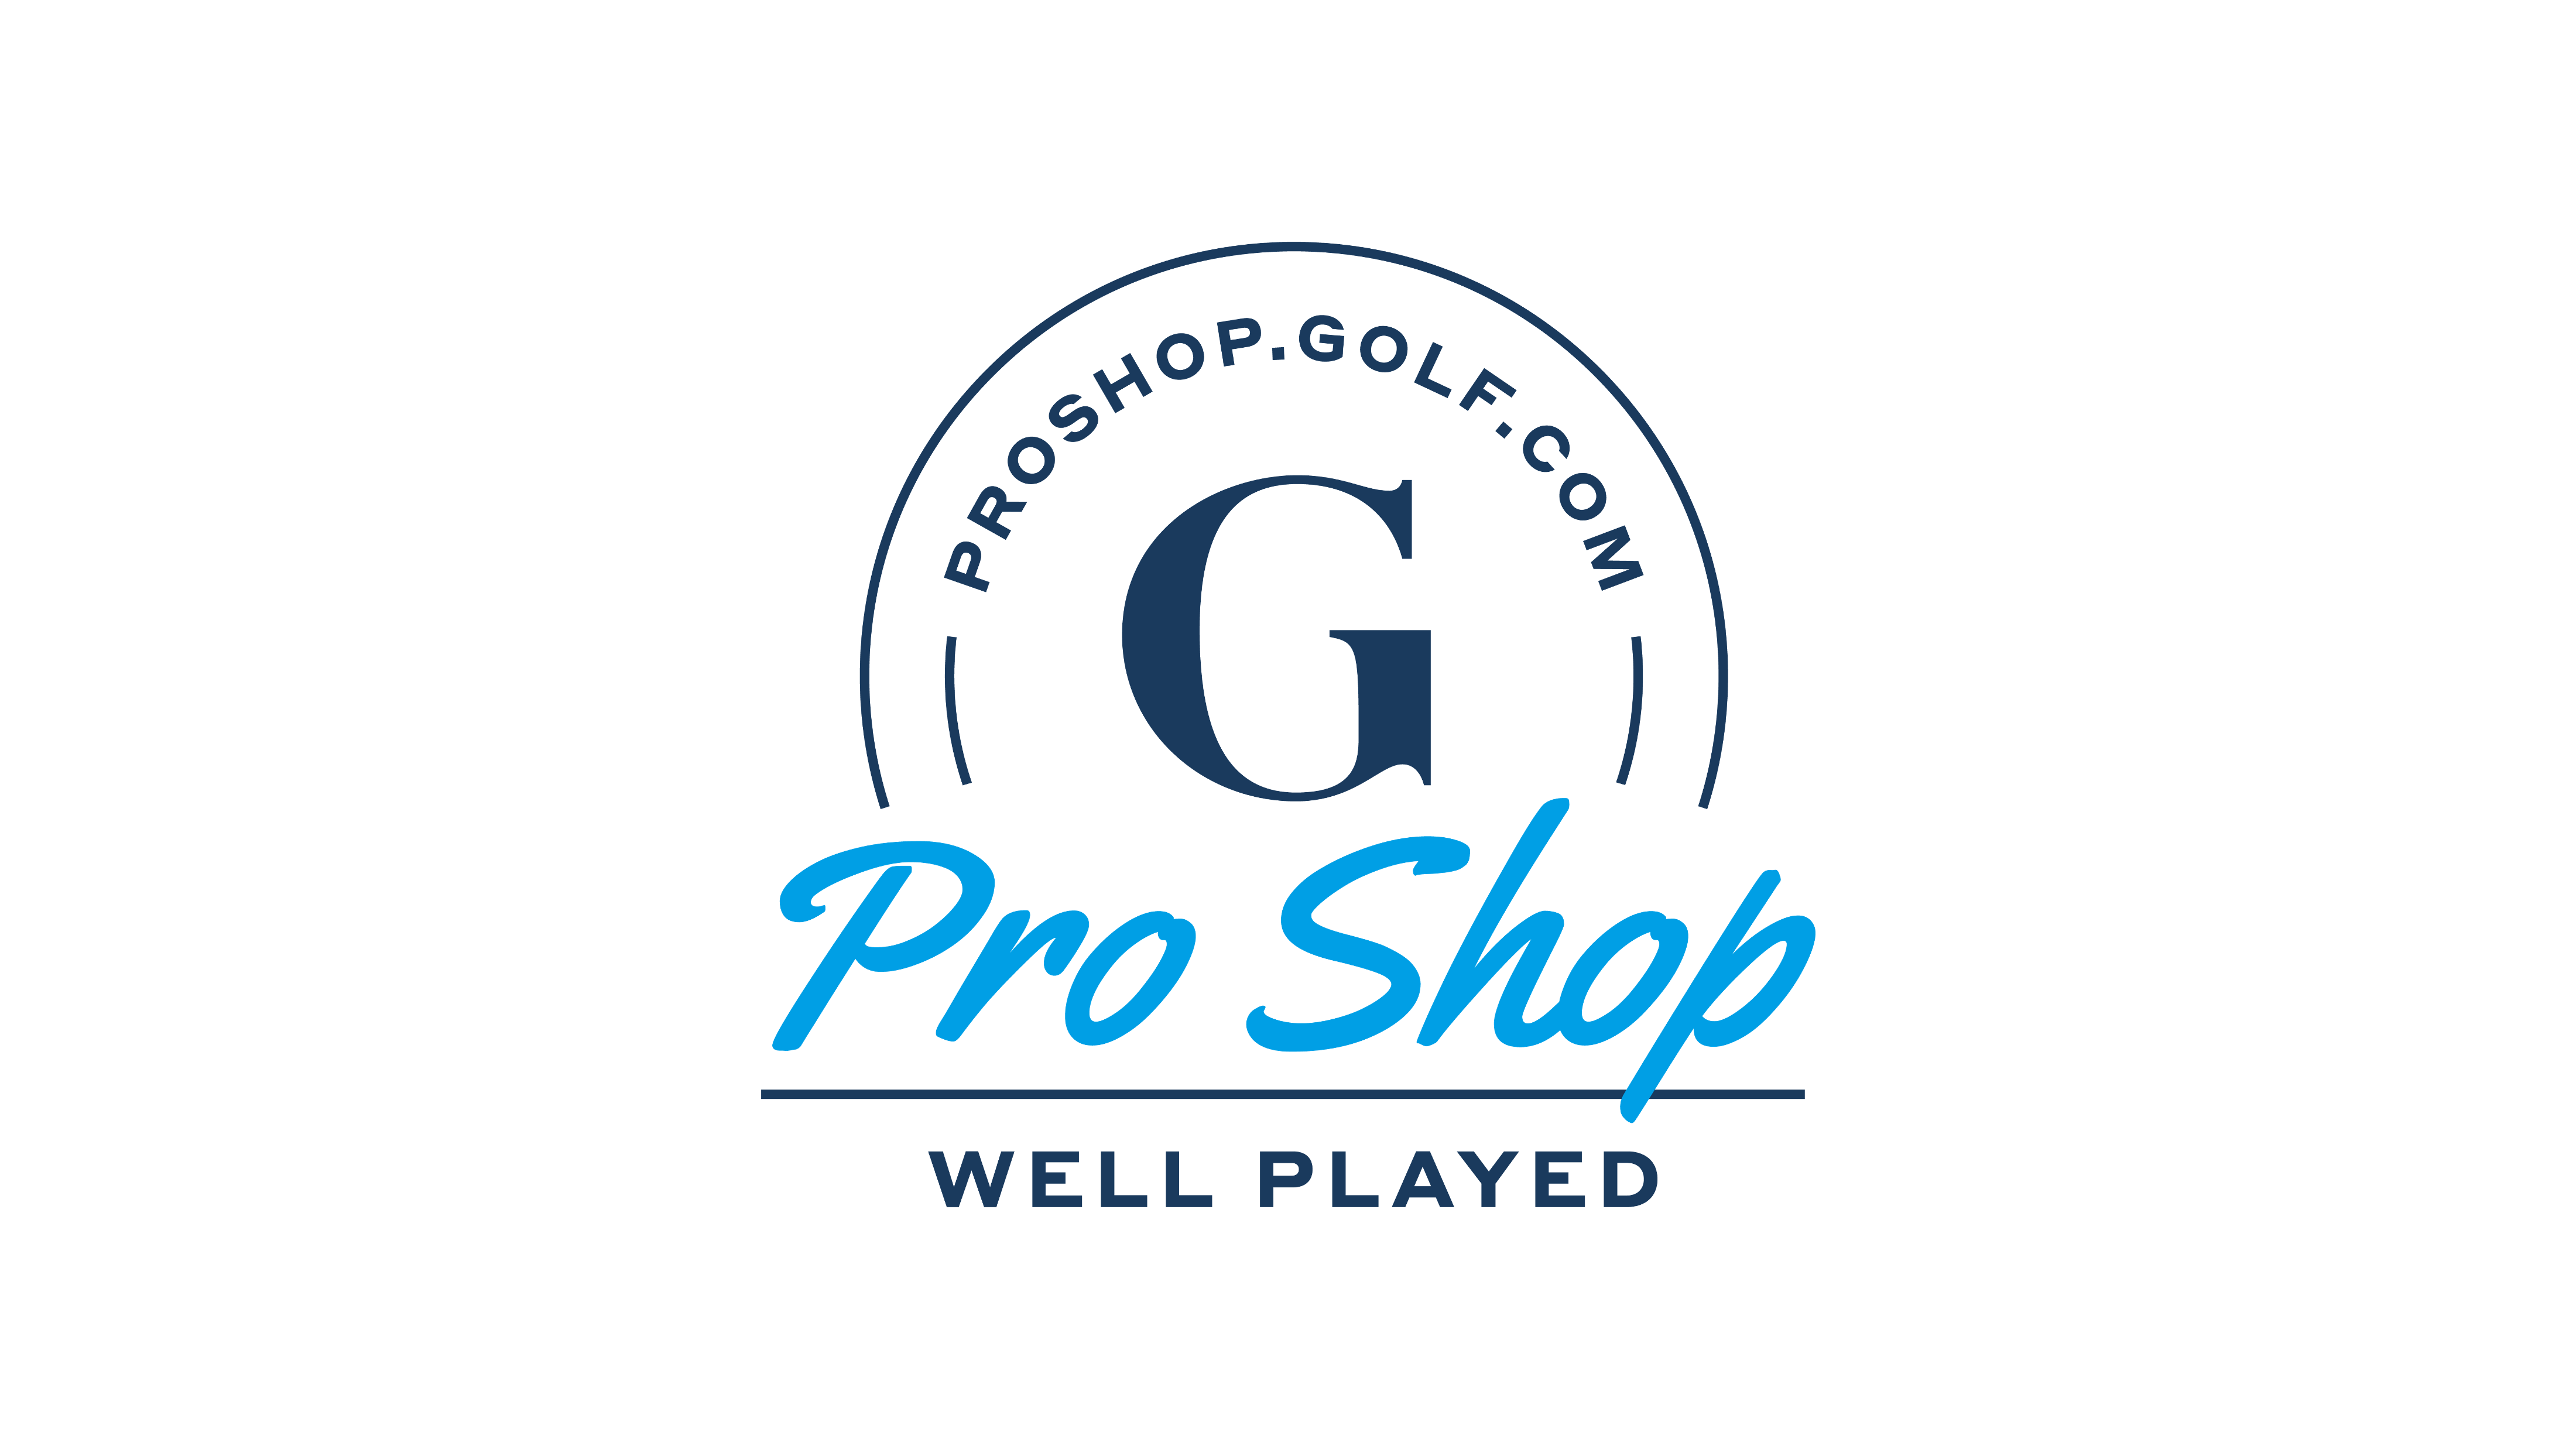 $20 GOLF.com Pro Shop credit 